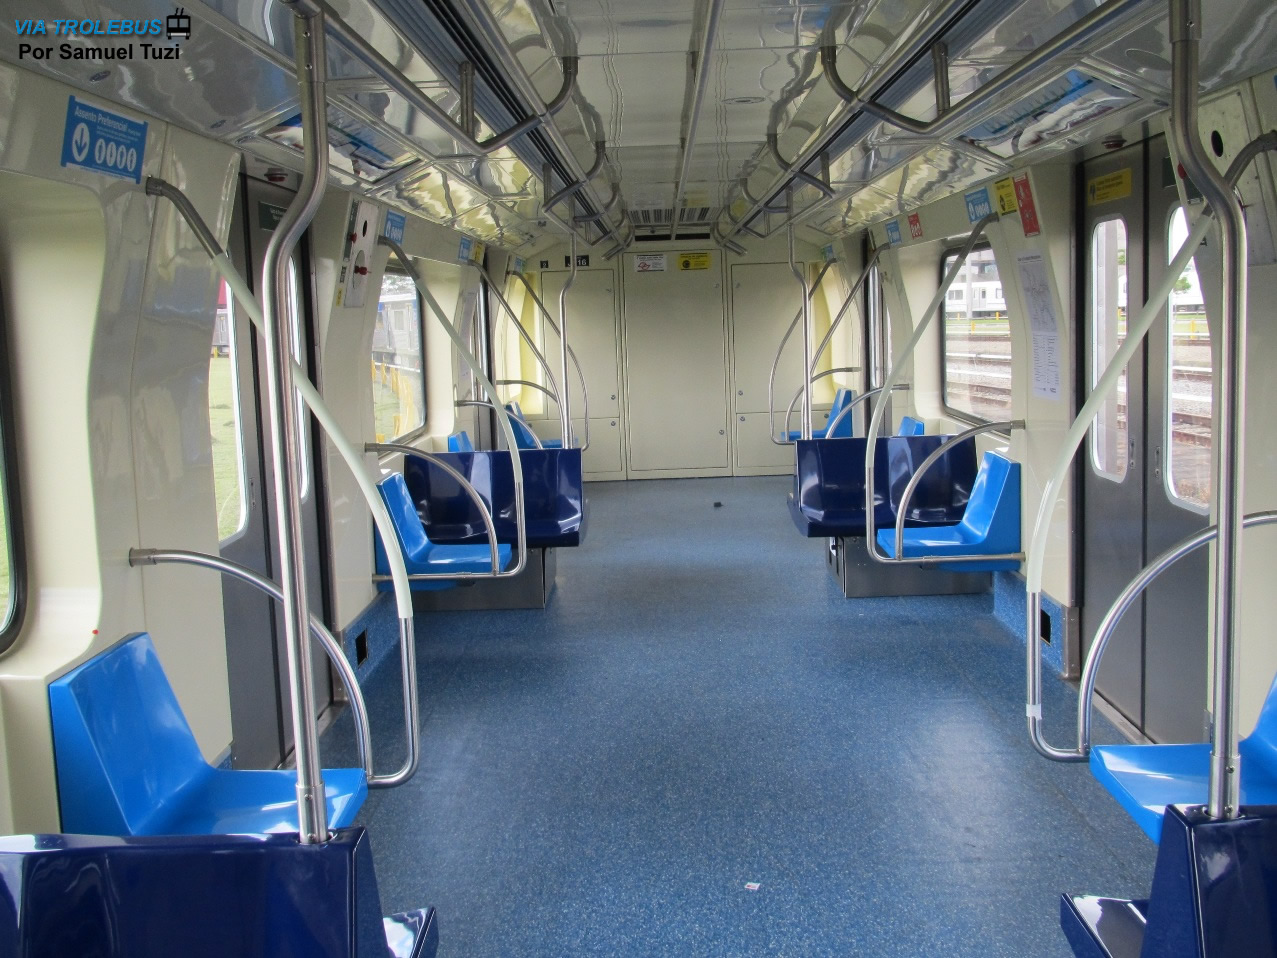 Interior de um trem reformado do Metrô - Imagem de Samuel Tuzi